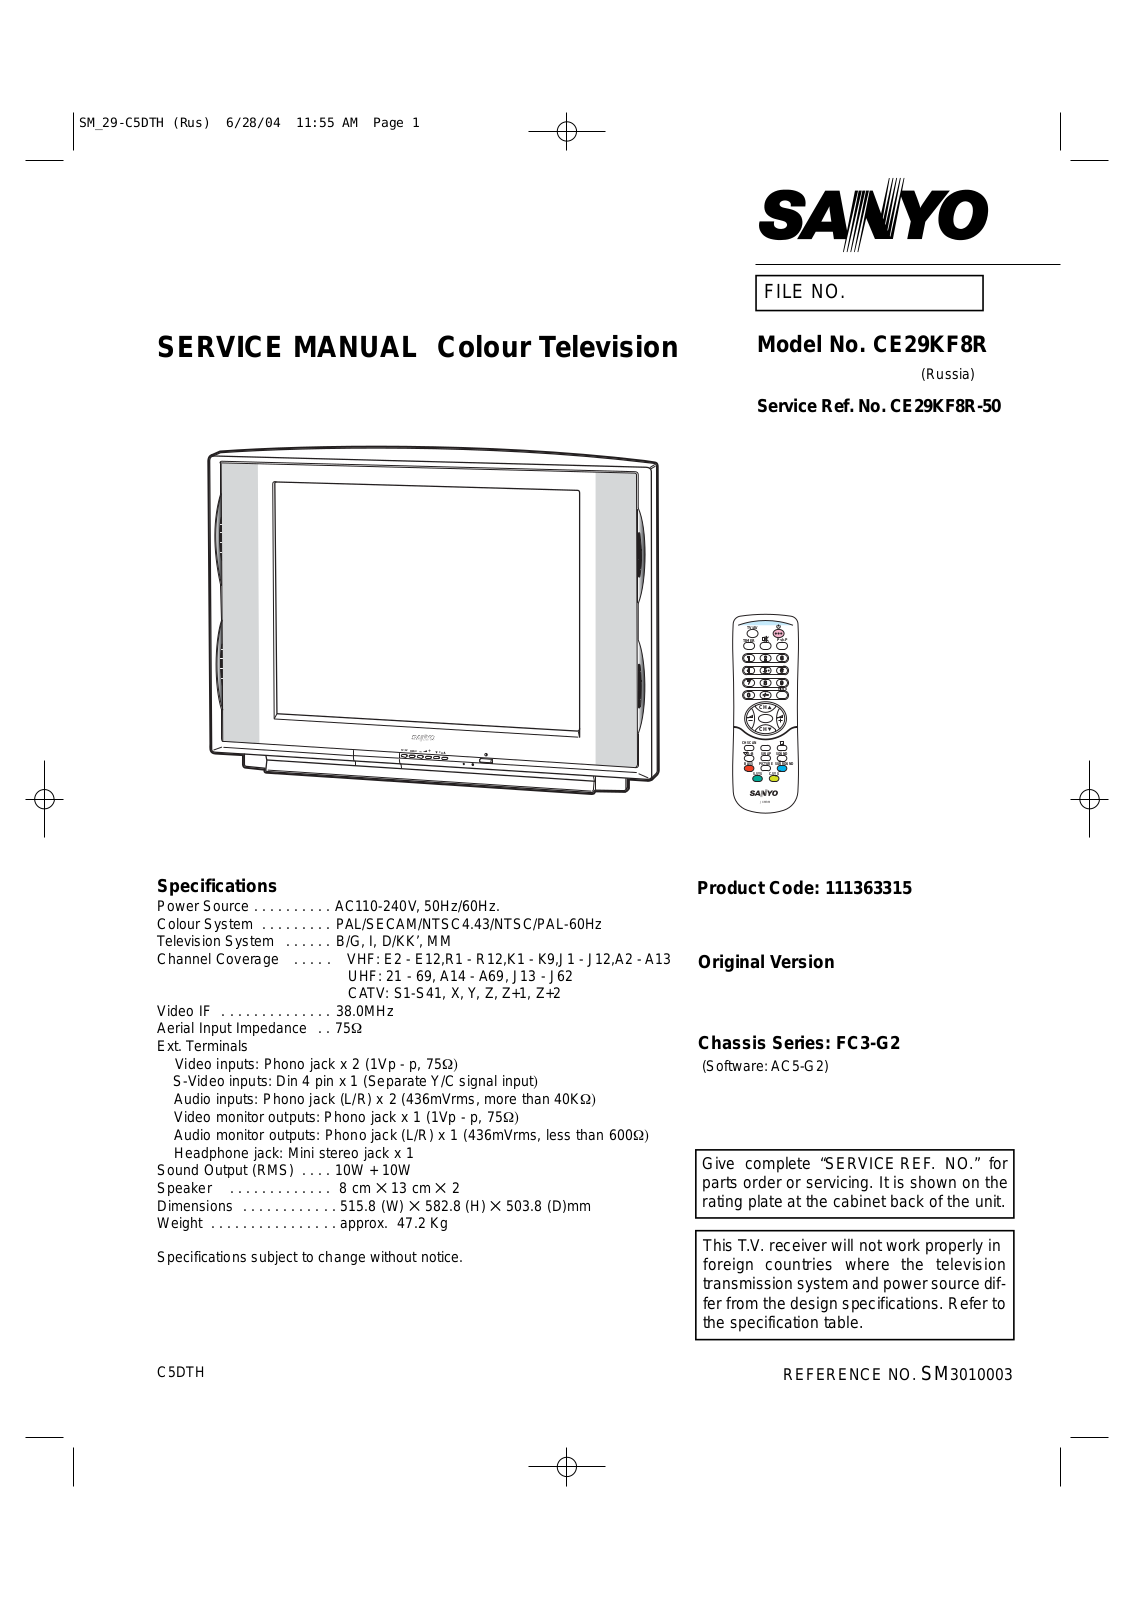 SANYO CE29KF8R Service Manual